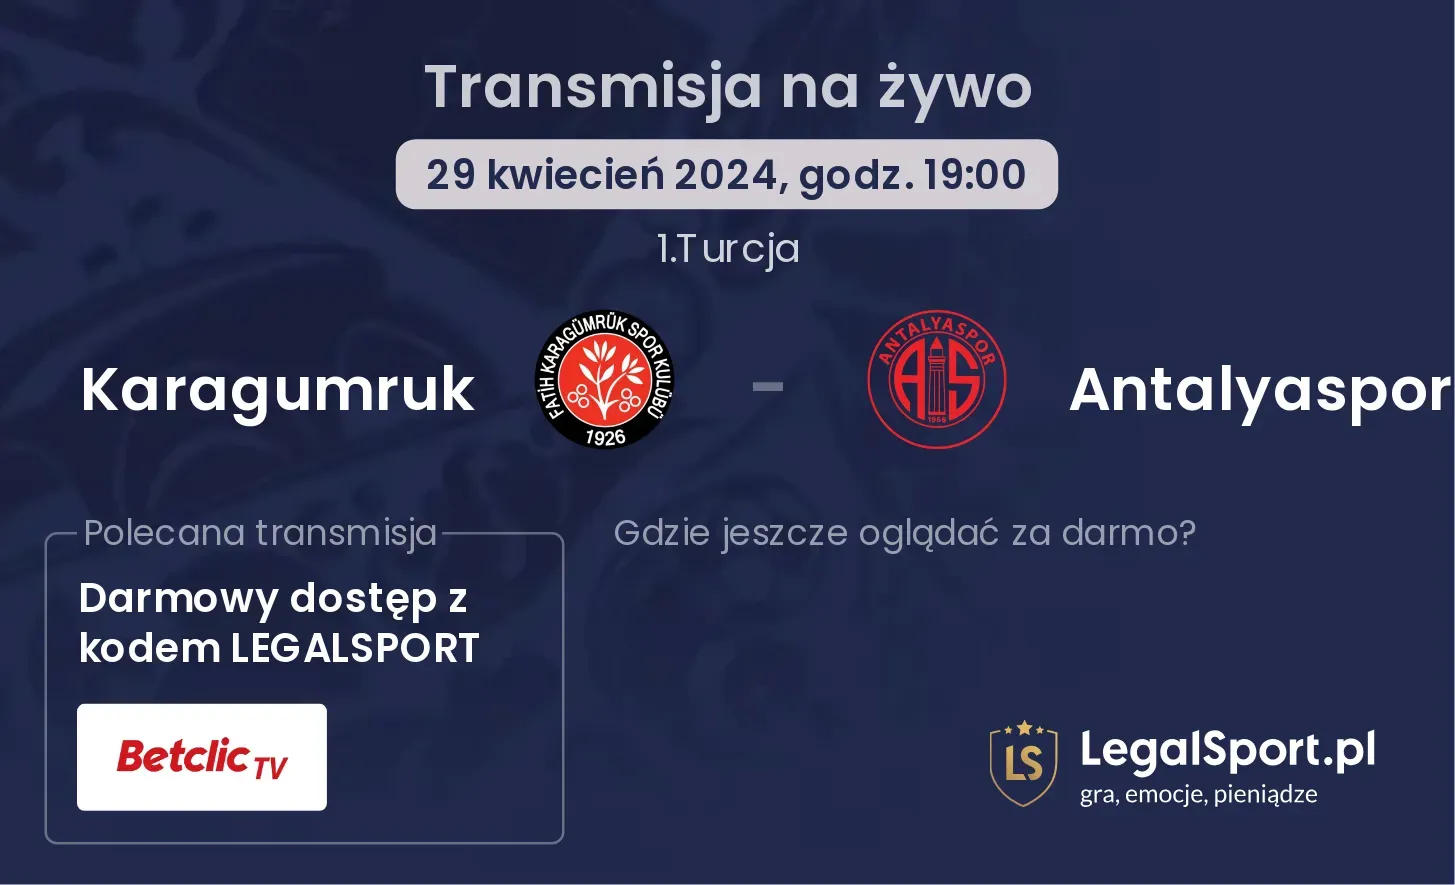 Karagumruk - Antalyaspor transmisja na żywo